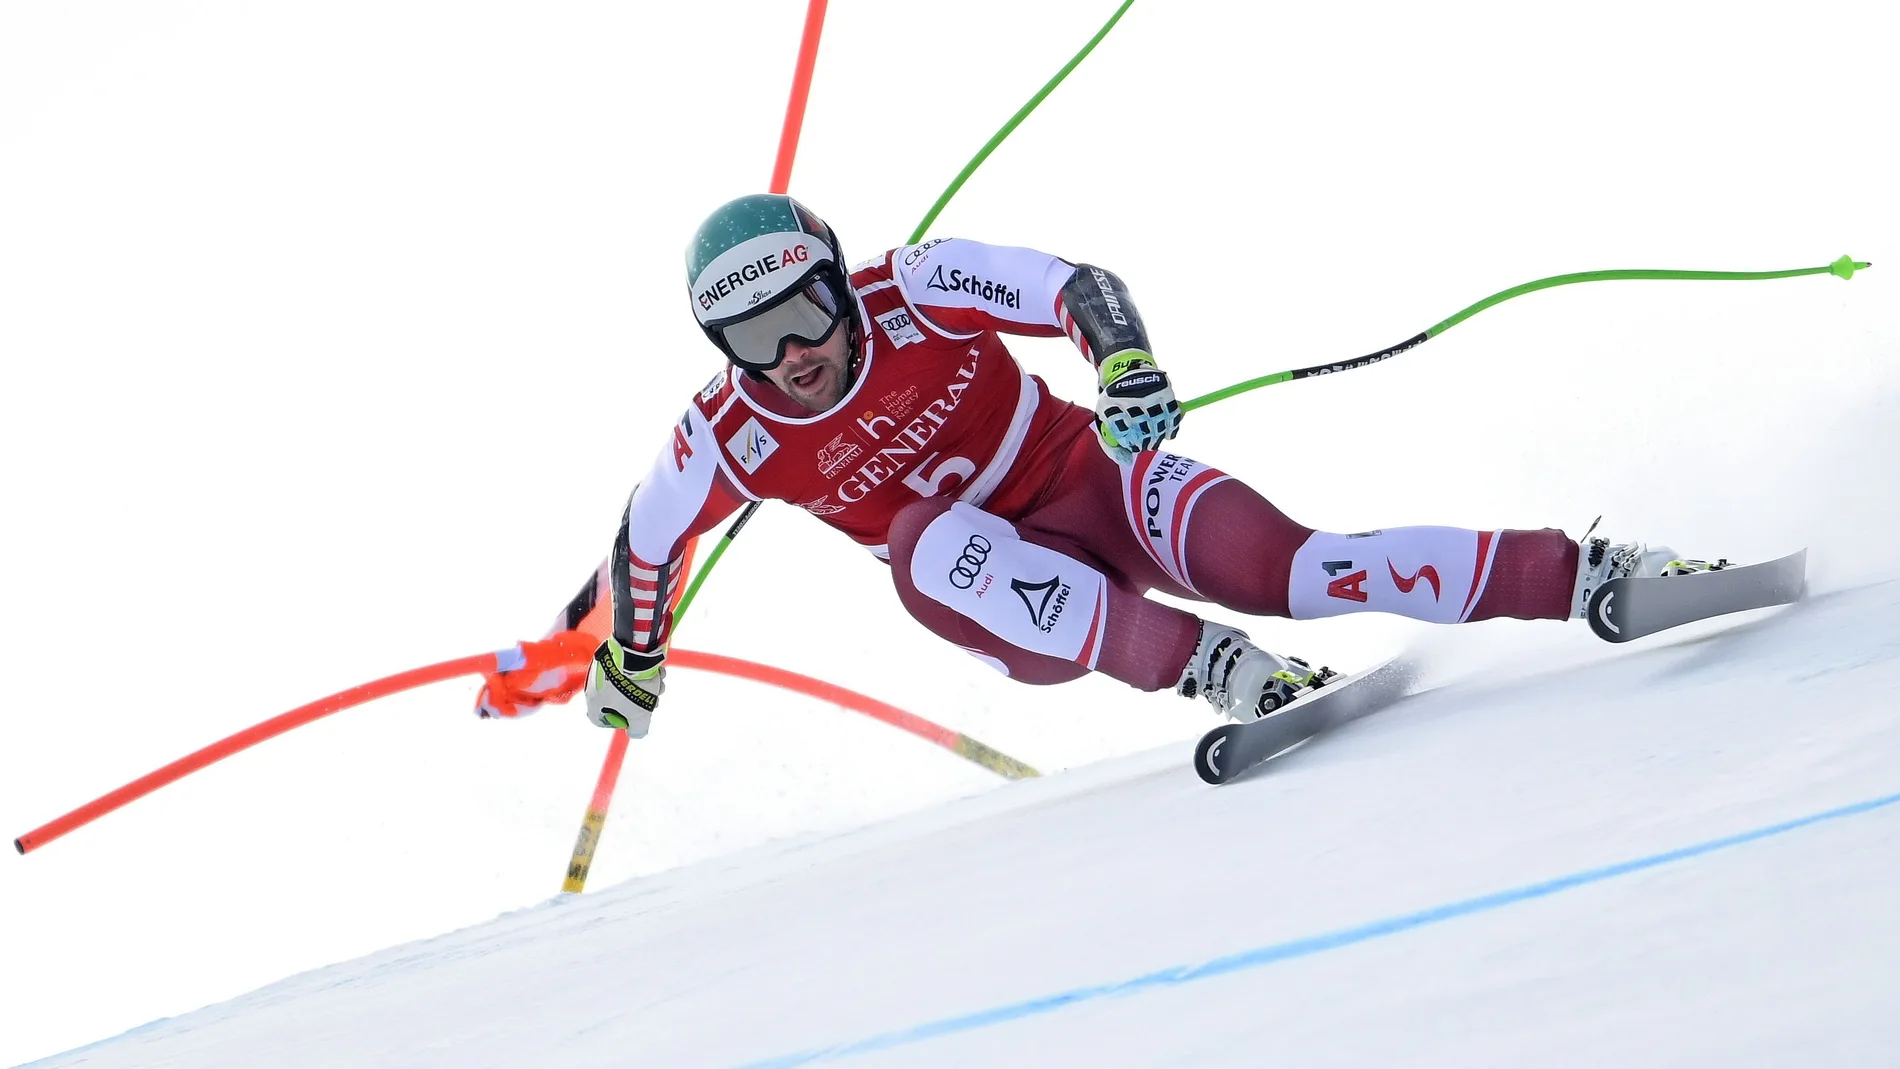 El austriaco Vincent Kriechmayr en acción durante la carrera masculina de Súper G de la prueba de la Copa del Mundo de Esquí Alpino de la FIS en Kitzbuehel, Austria, 25 de enero de 2021. EFE/EPA/CHRISTIAN BRUNA